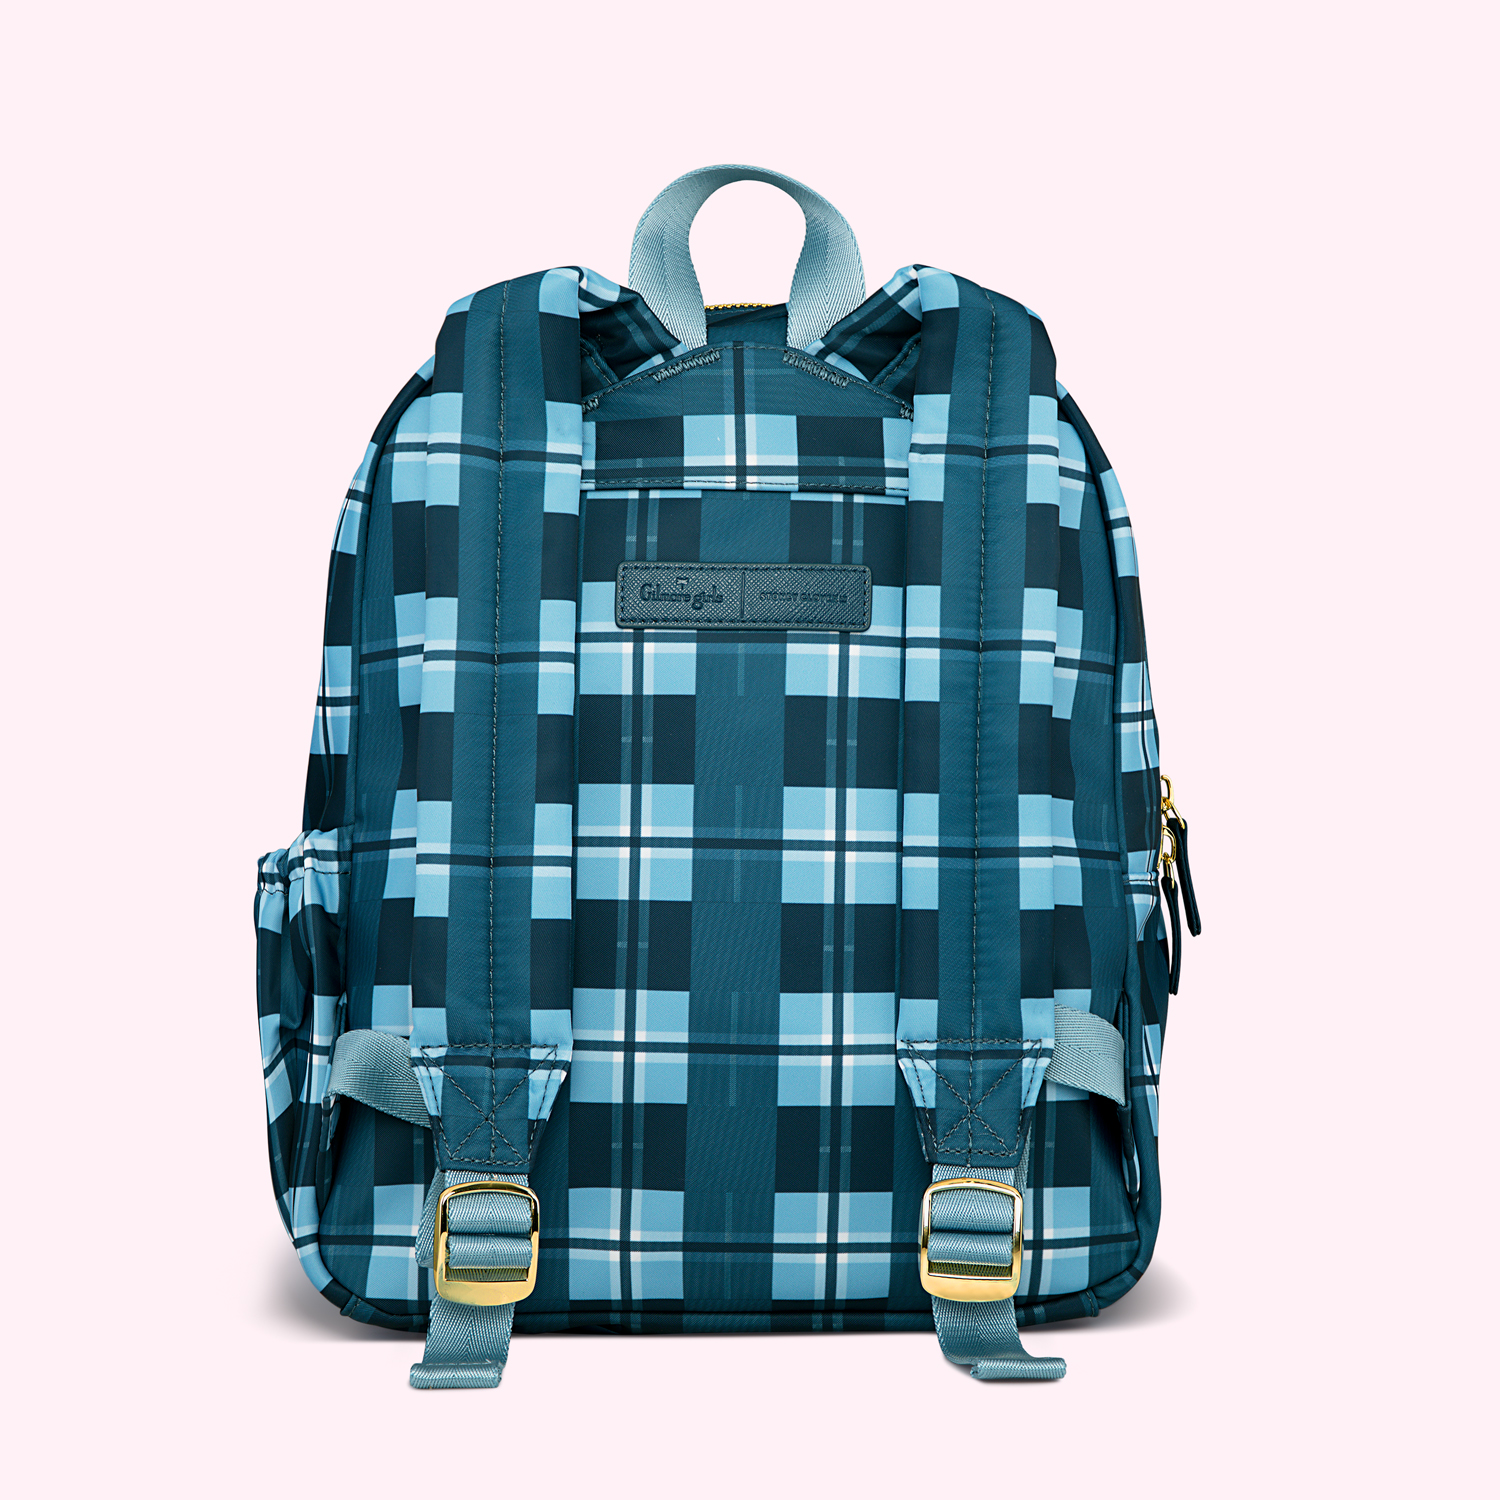 Gilmore Girls Mini Backpack - Customizable | Stoney Clover Lane